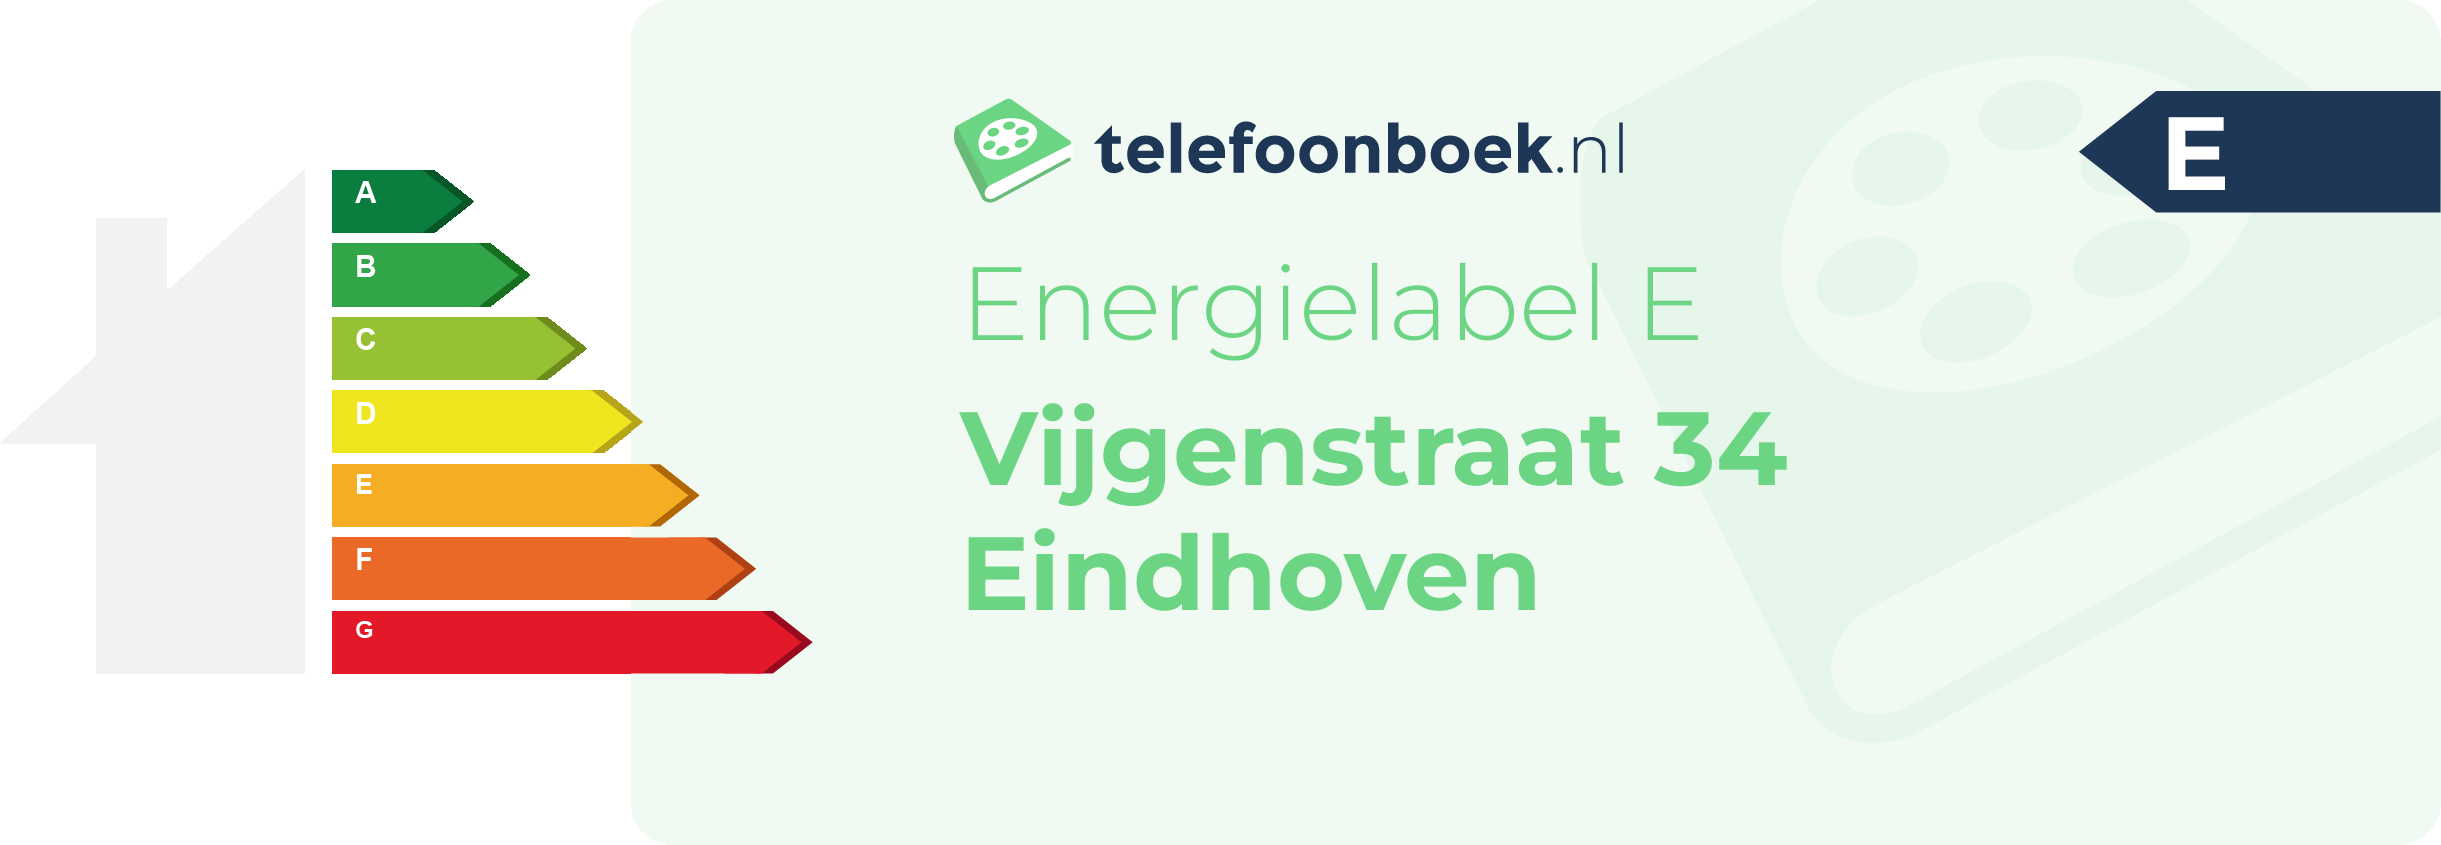 Energielabel Vijgenstraat 34 Eindhoven